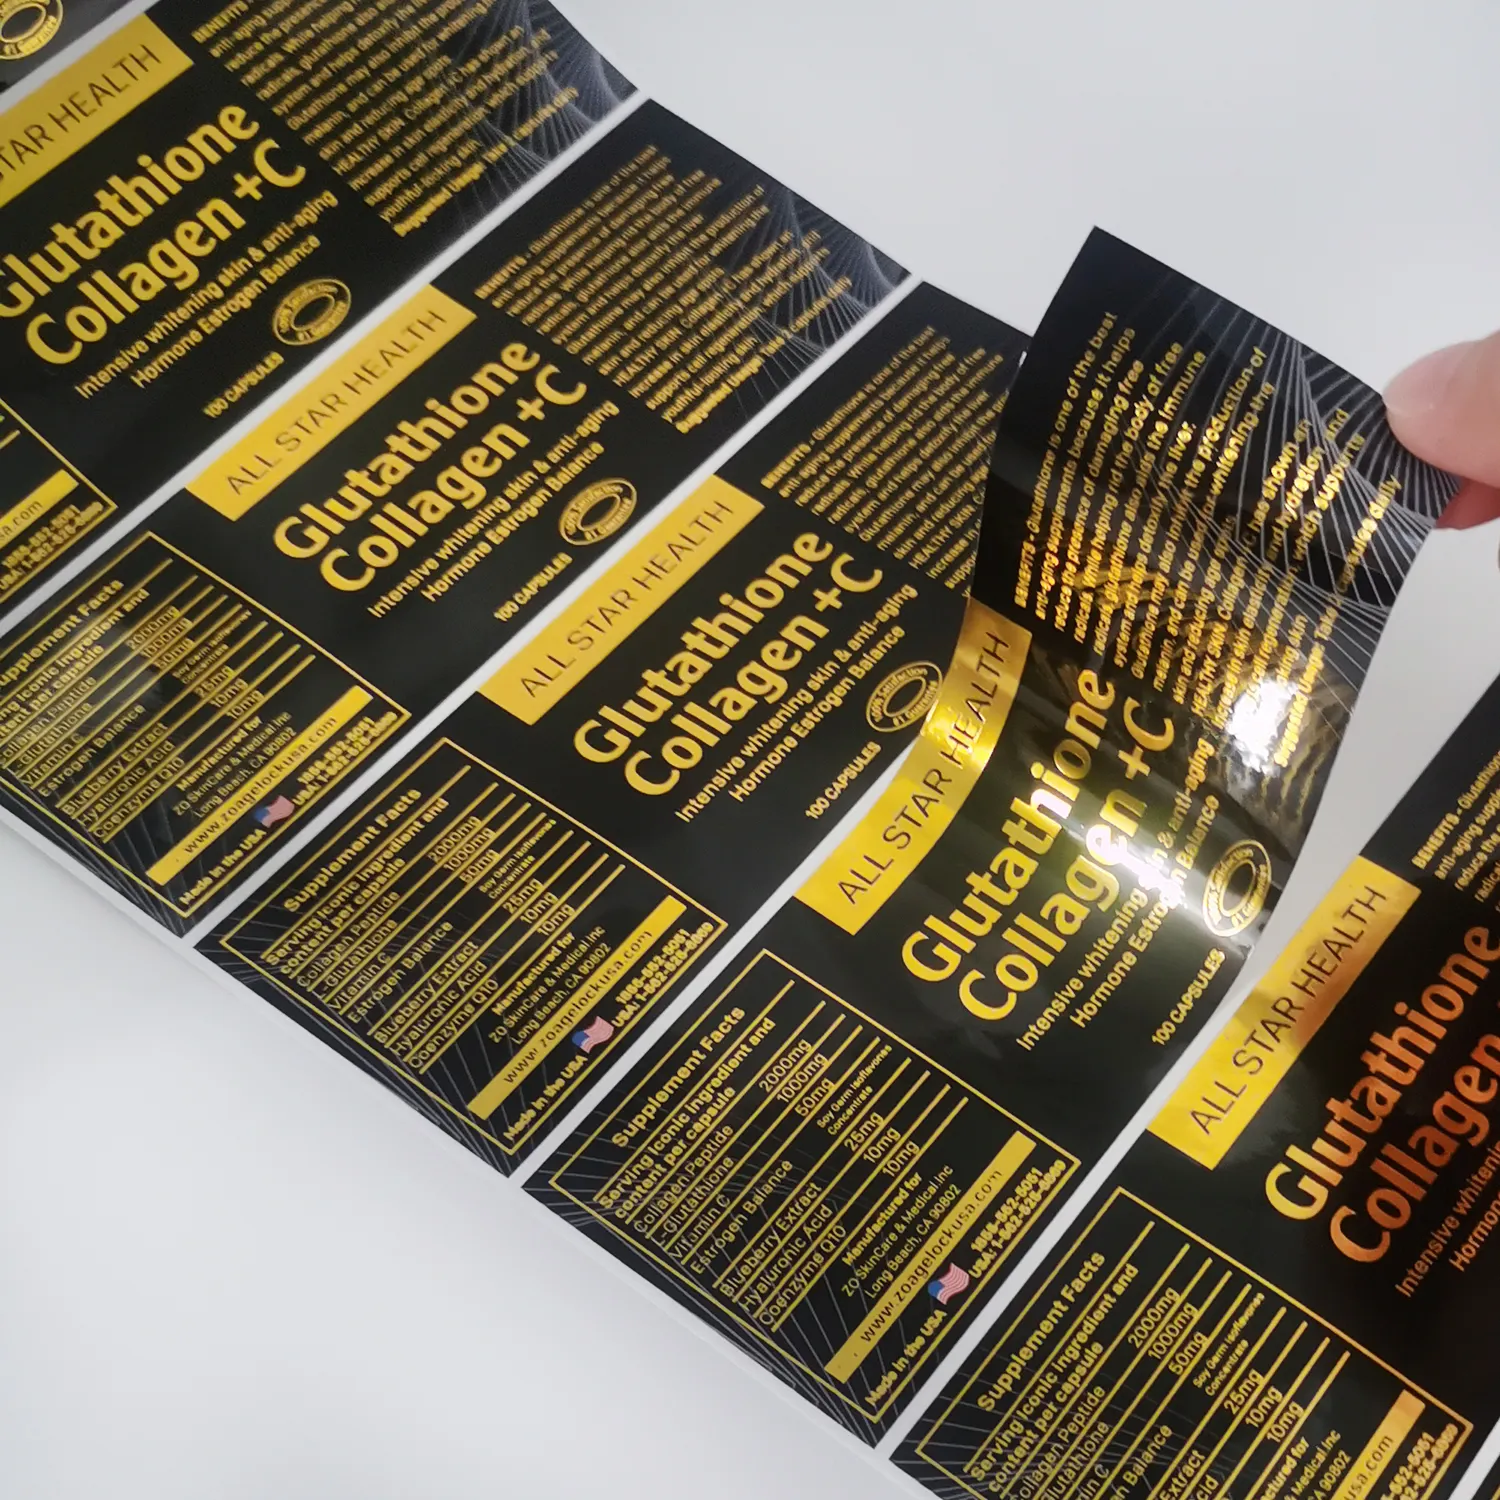 Kundenspezifische Vitaminflaschen-Verpackungsetikett-Design Solgar Etiqueta Goldfolien-Aufkleber kundenspezifische Etiketten für Nahrungsergänzungsmittelflaschen